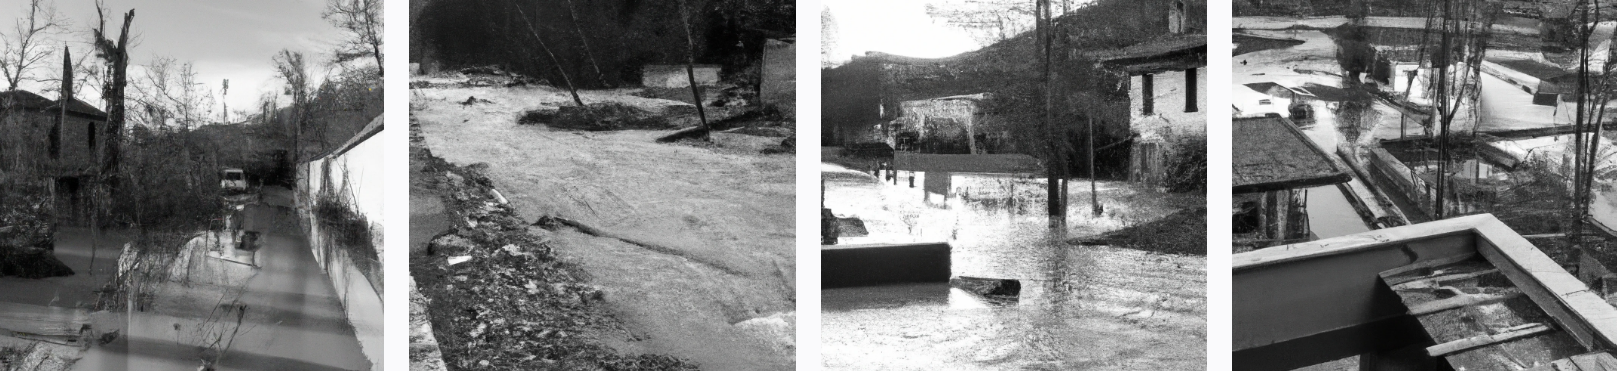 Il rischio #idrogeologico in Italia come risolverlo (#ChatGPT) + video news 16 5 23 su #alluvioni!